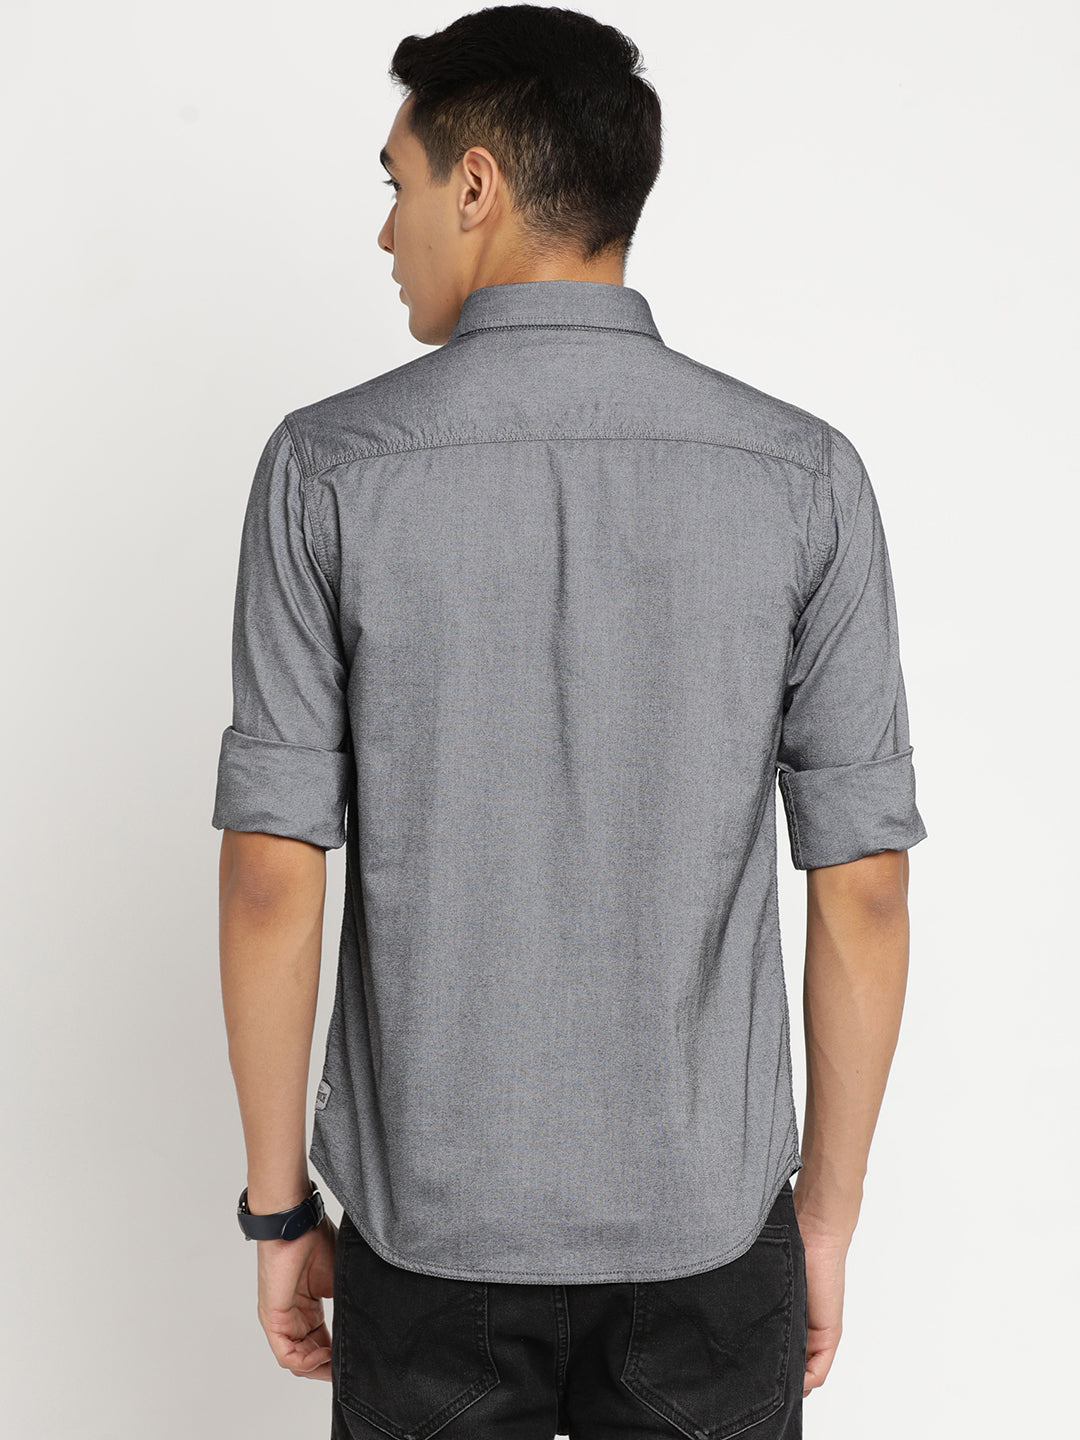 DK Grey Plain Shirt